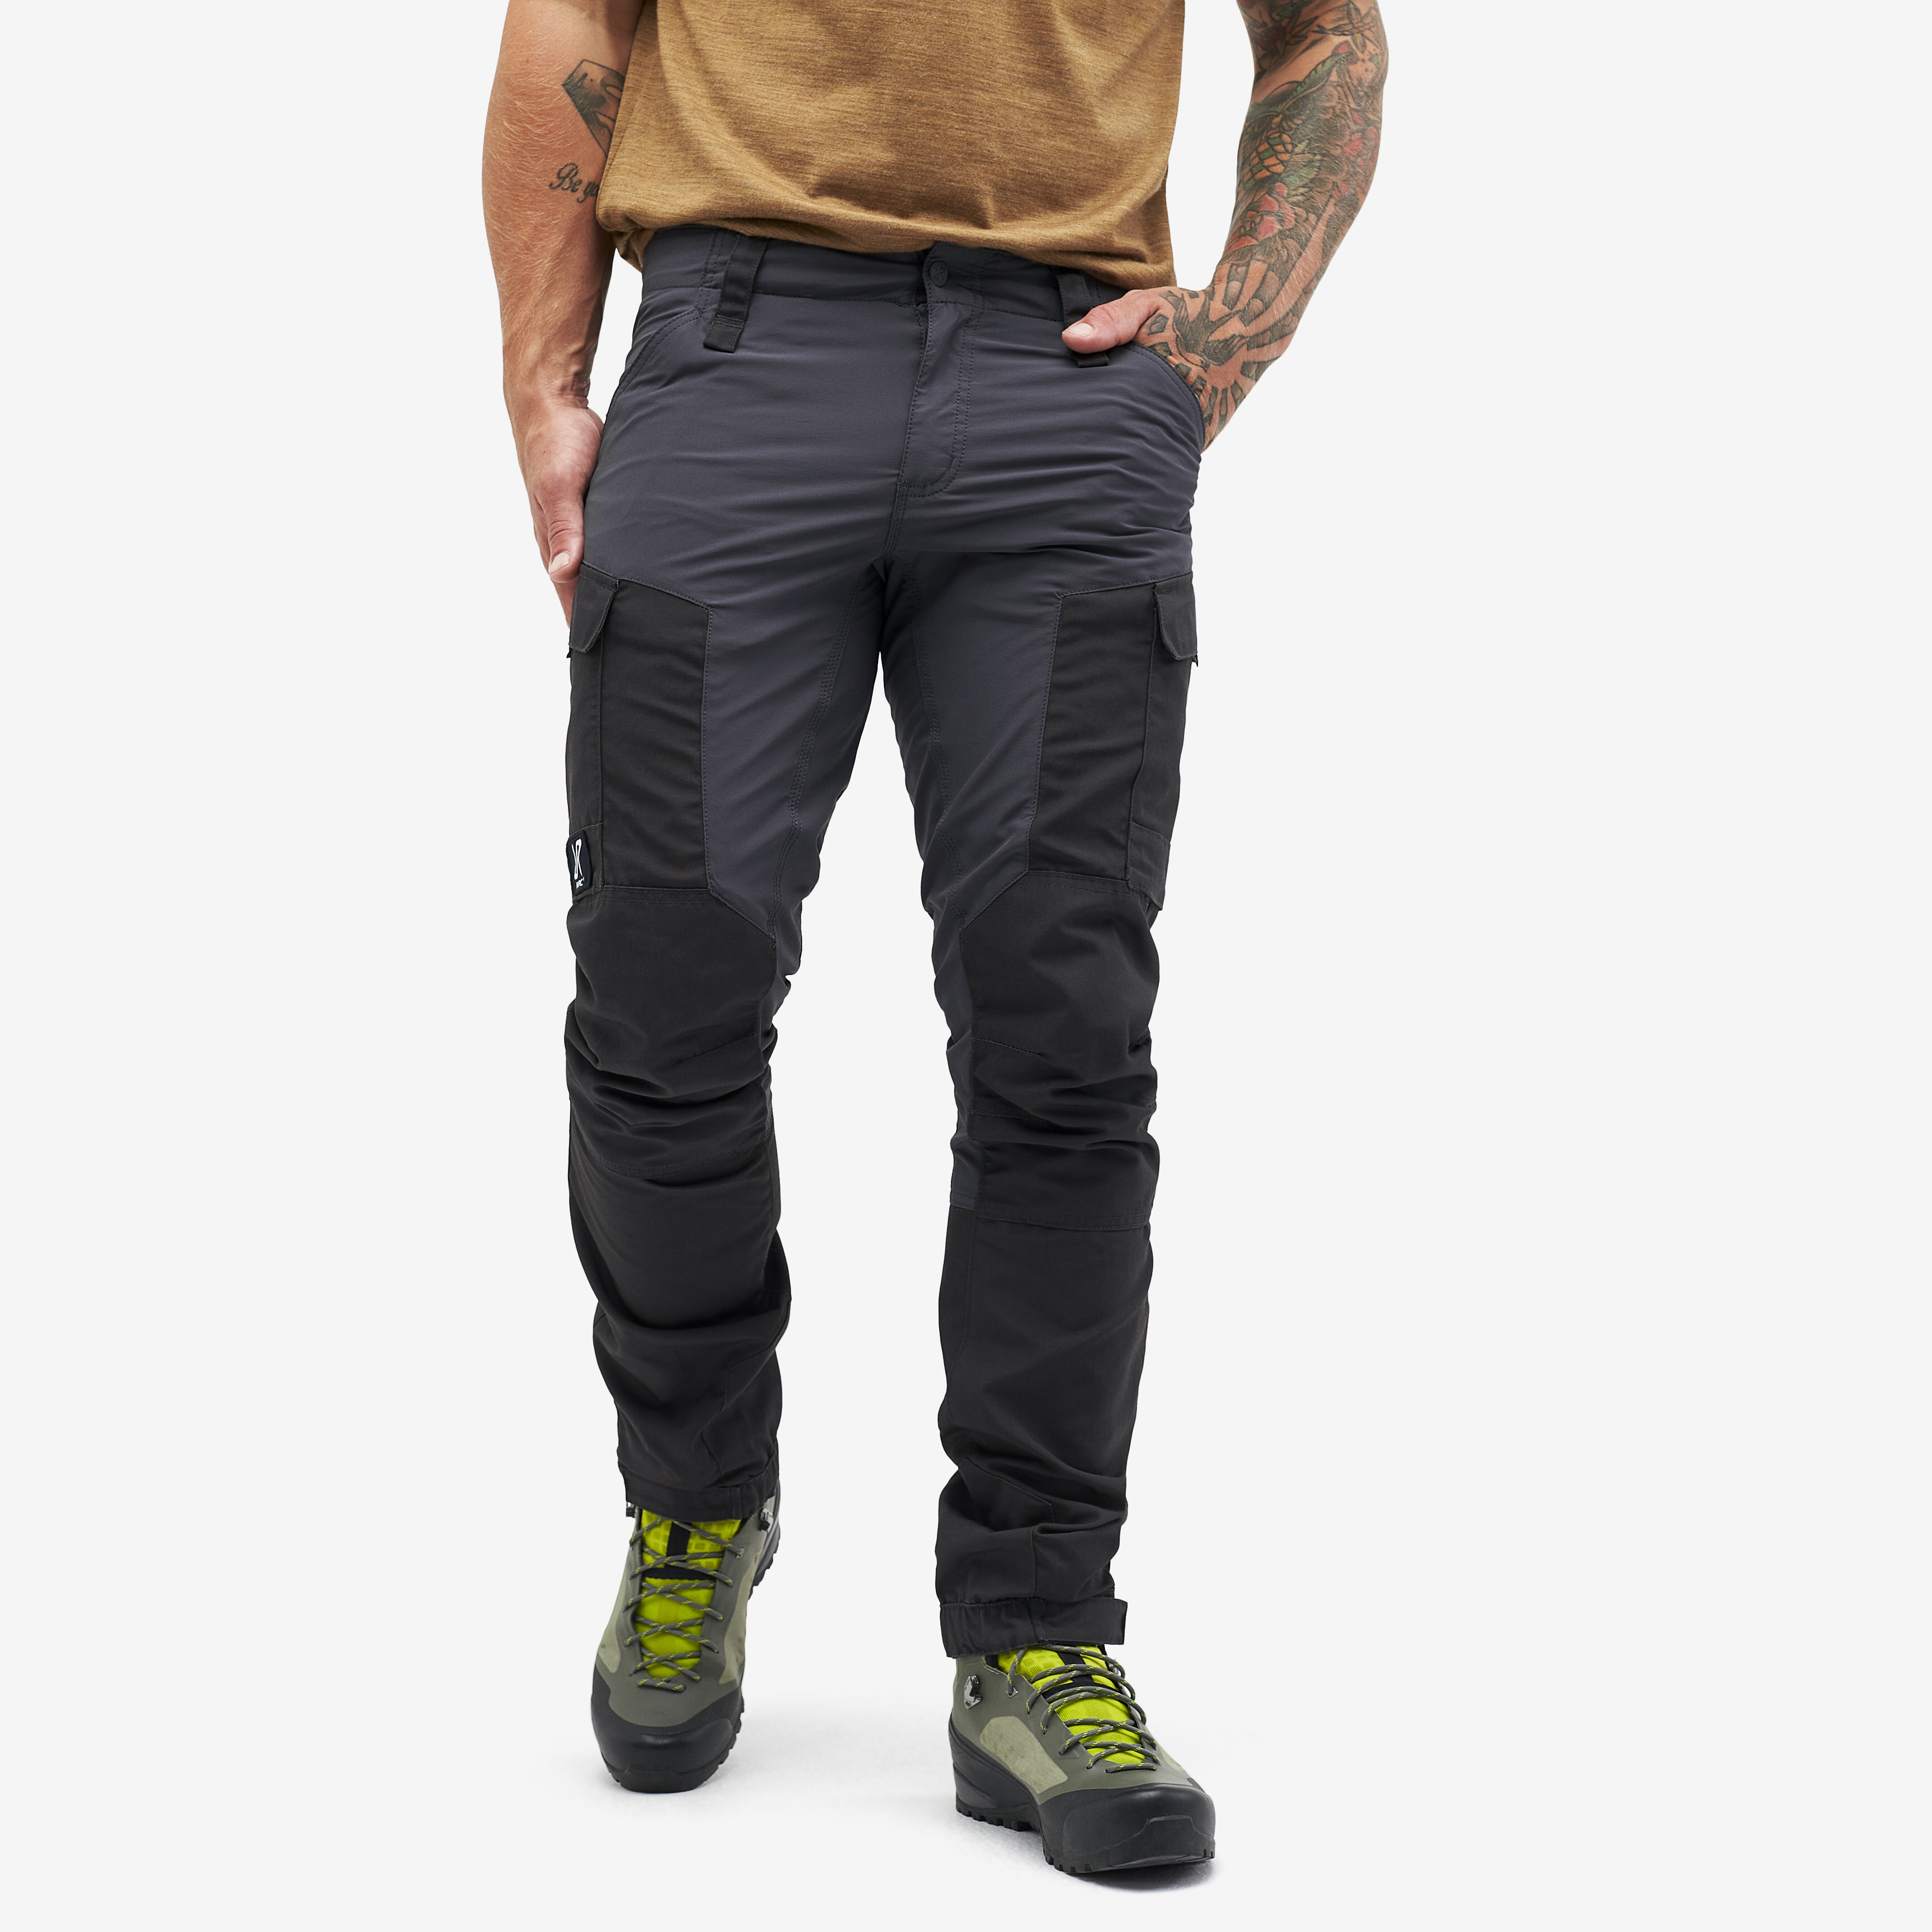 RVRC GP outdoor bukser for mænd i mørkegrå